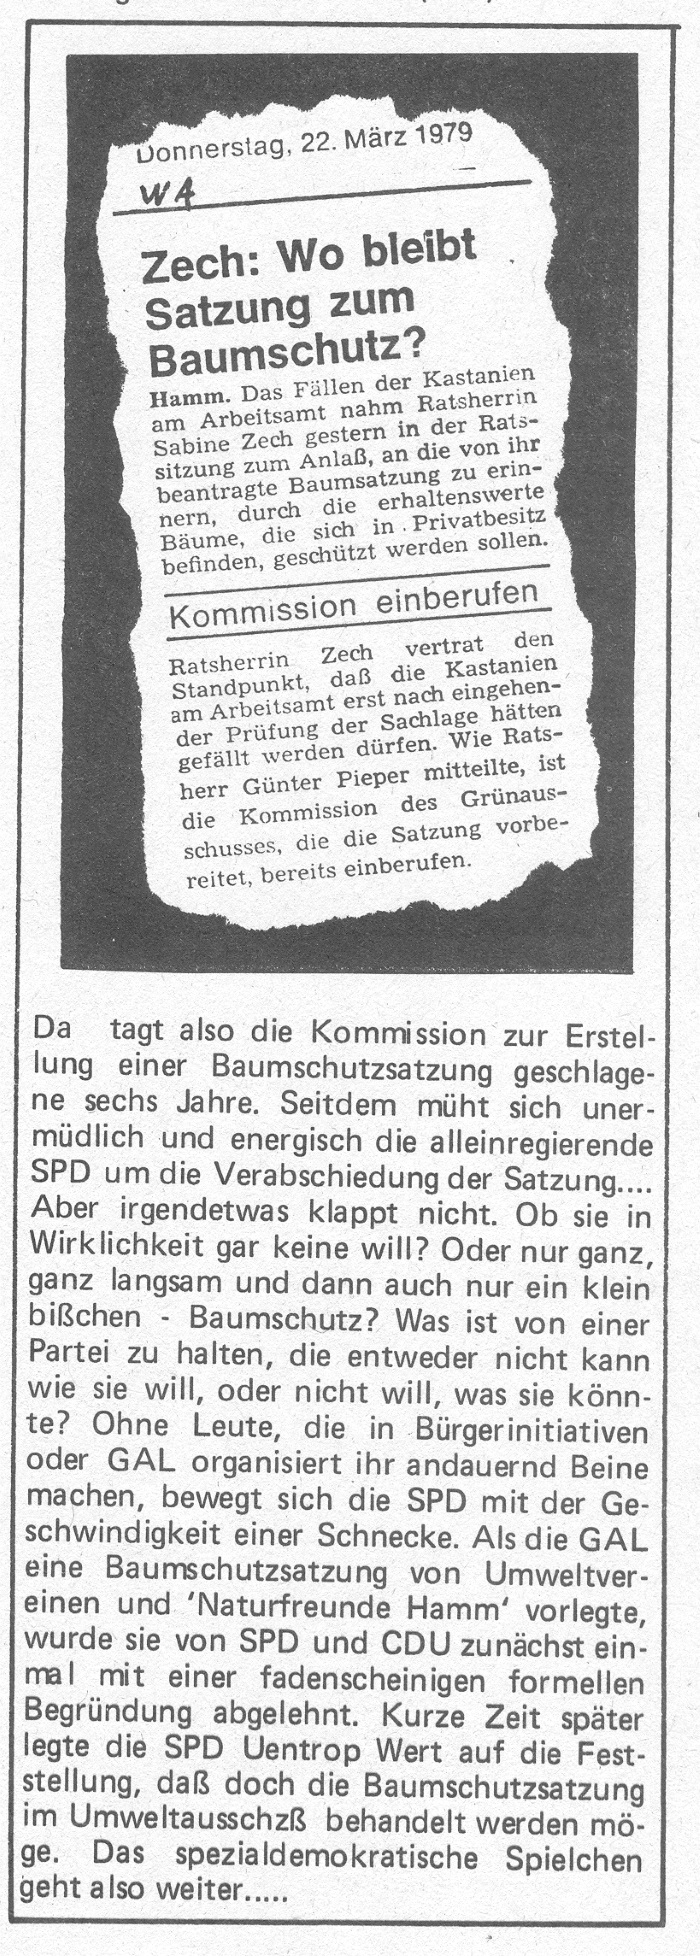 Artikel aus "Der grüne Hammer" Nr. 3, Stadtteilzeitung der GAL-Uentrop, Auflage 8.000